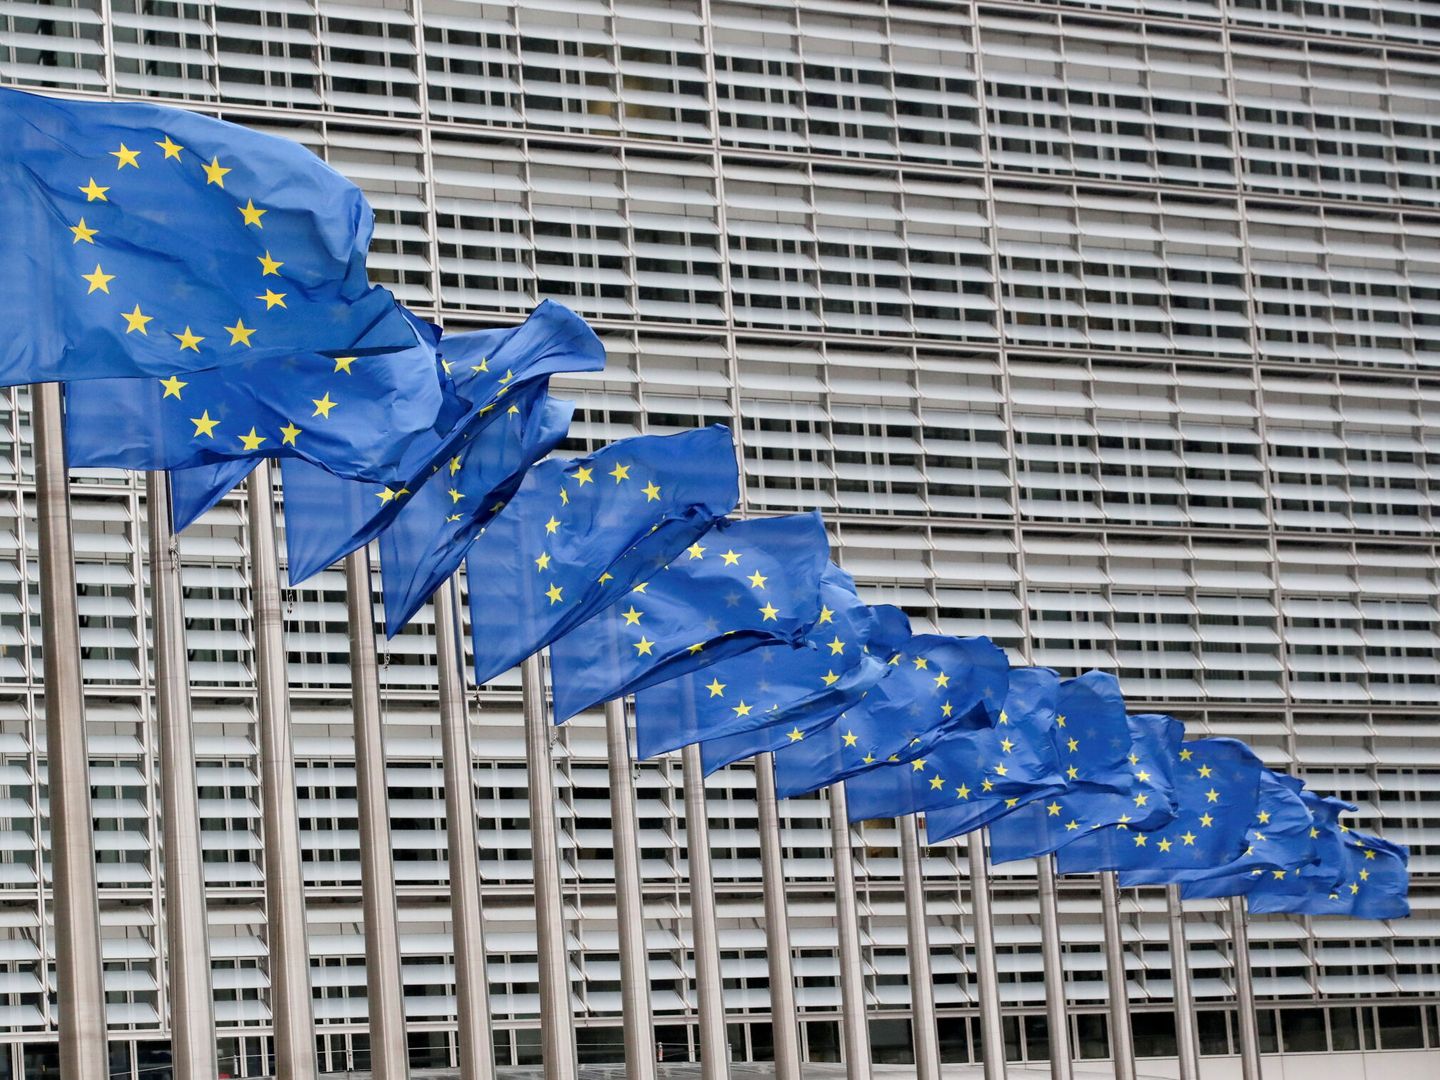 Banderas europeas frente a la Comisión Europea en Bruselas. (Reuters)